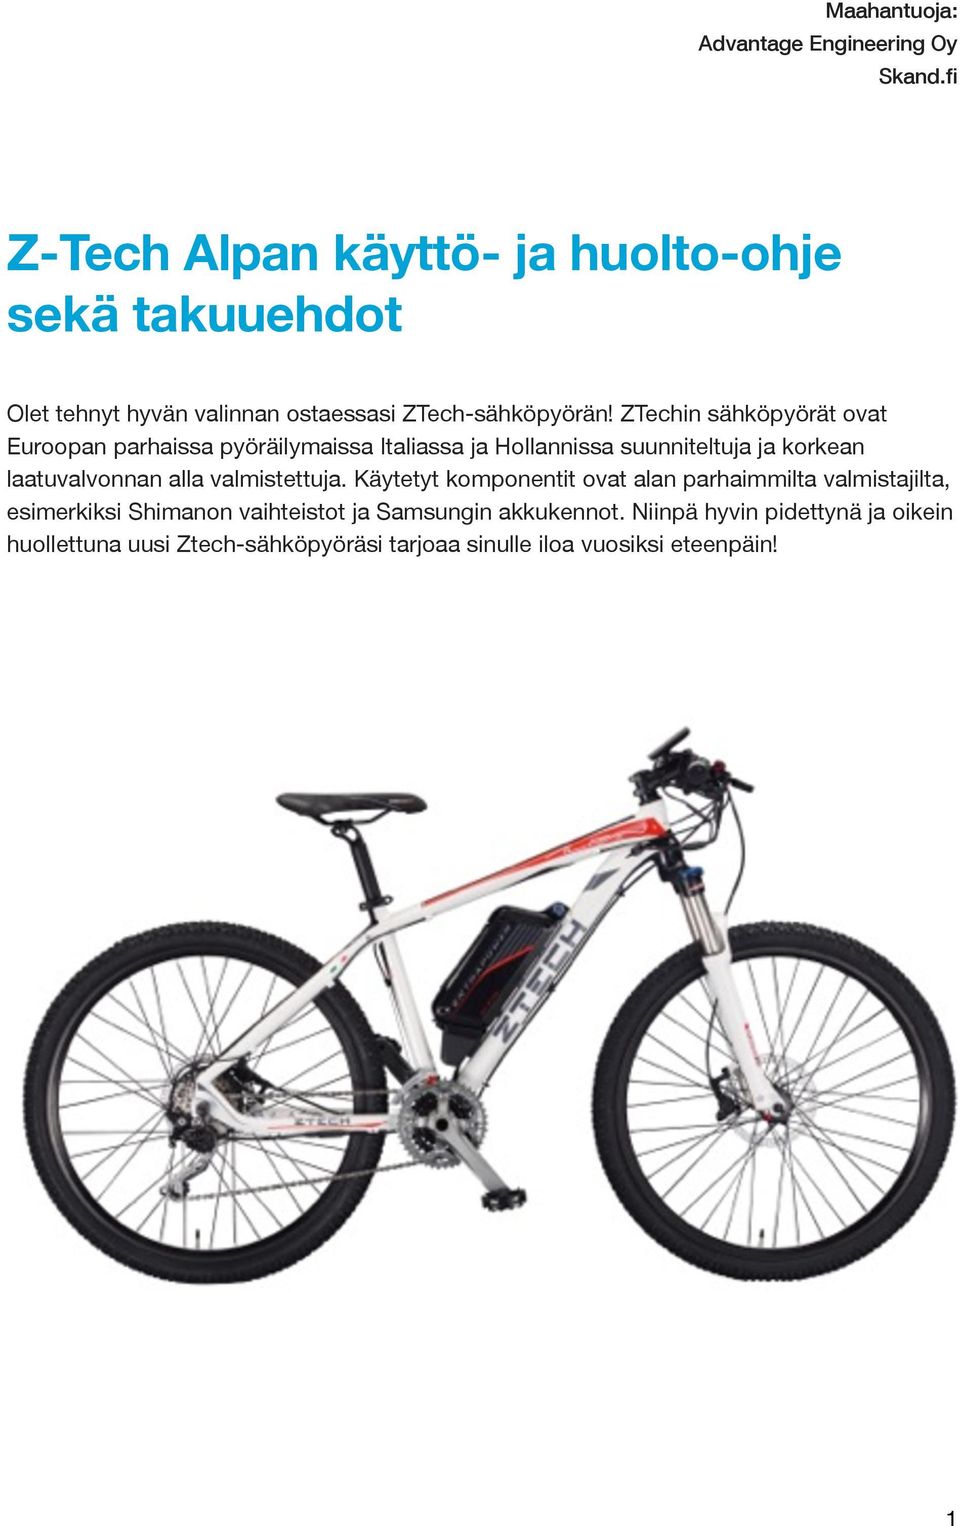 ZTechin sähköpyörät ovat Euroopan parhaissa pyöräilymaissa Italiassa ja Hollannissa suunniteltuja ja korkean laatuvalvonnan alla